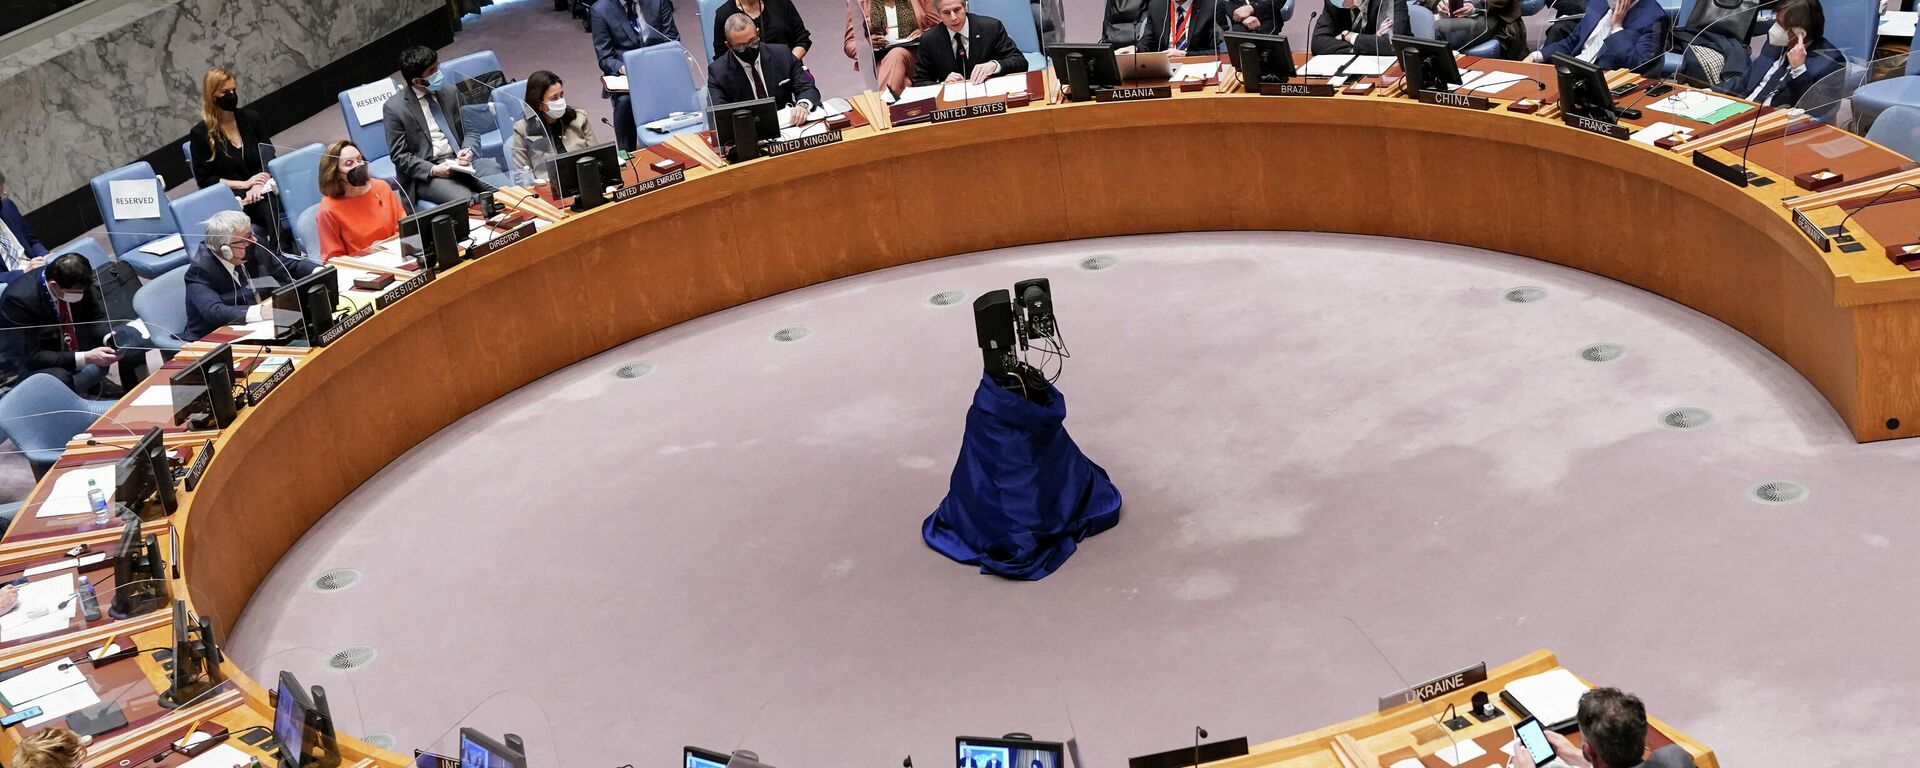 Una reunión del Consejo de Seguridad de la ONU sobre la situación entre Rusia y Ucrania, en la Sede de las Naciones Unidas en Manhattan, Nueva York, EEUU, 17 de febrero de 2022 - Sputnik Mundo, 1920, 02.03.2022